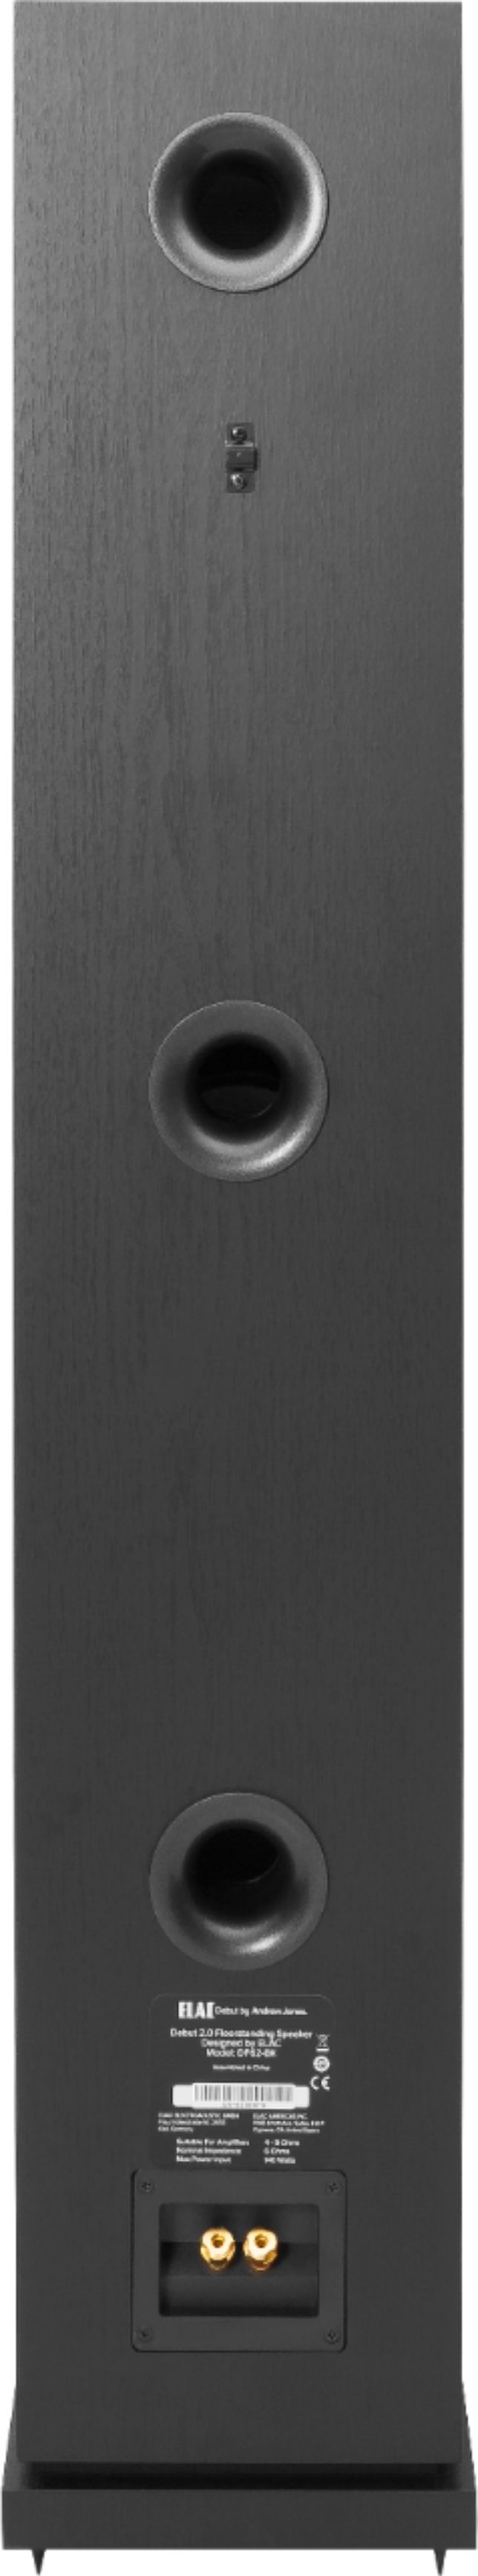 Back View: ELAC - Debut 2.0 Dual 6-1/2" 3-Way Floorstanding Speaker (Each) - Black